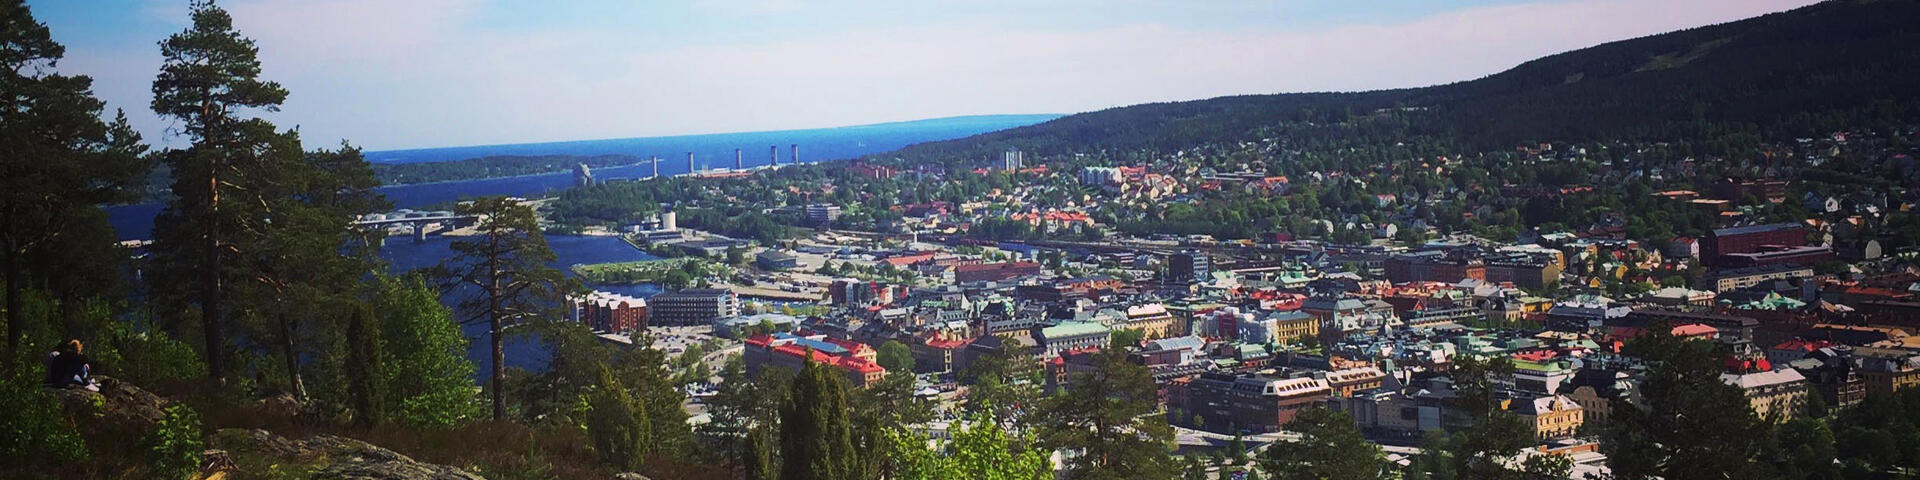 En vy över Sundsvall tagen från Norra berget med tallar och berg i förgrunden, staden nedanför berget. I horisonten syns Södra berget och havet.